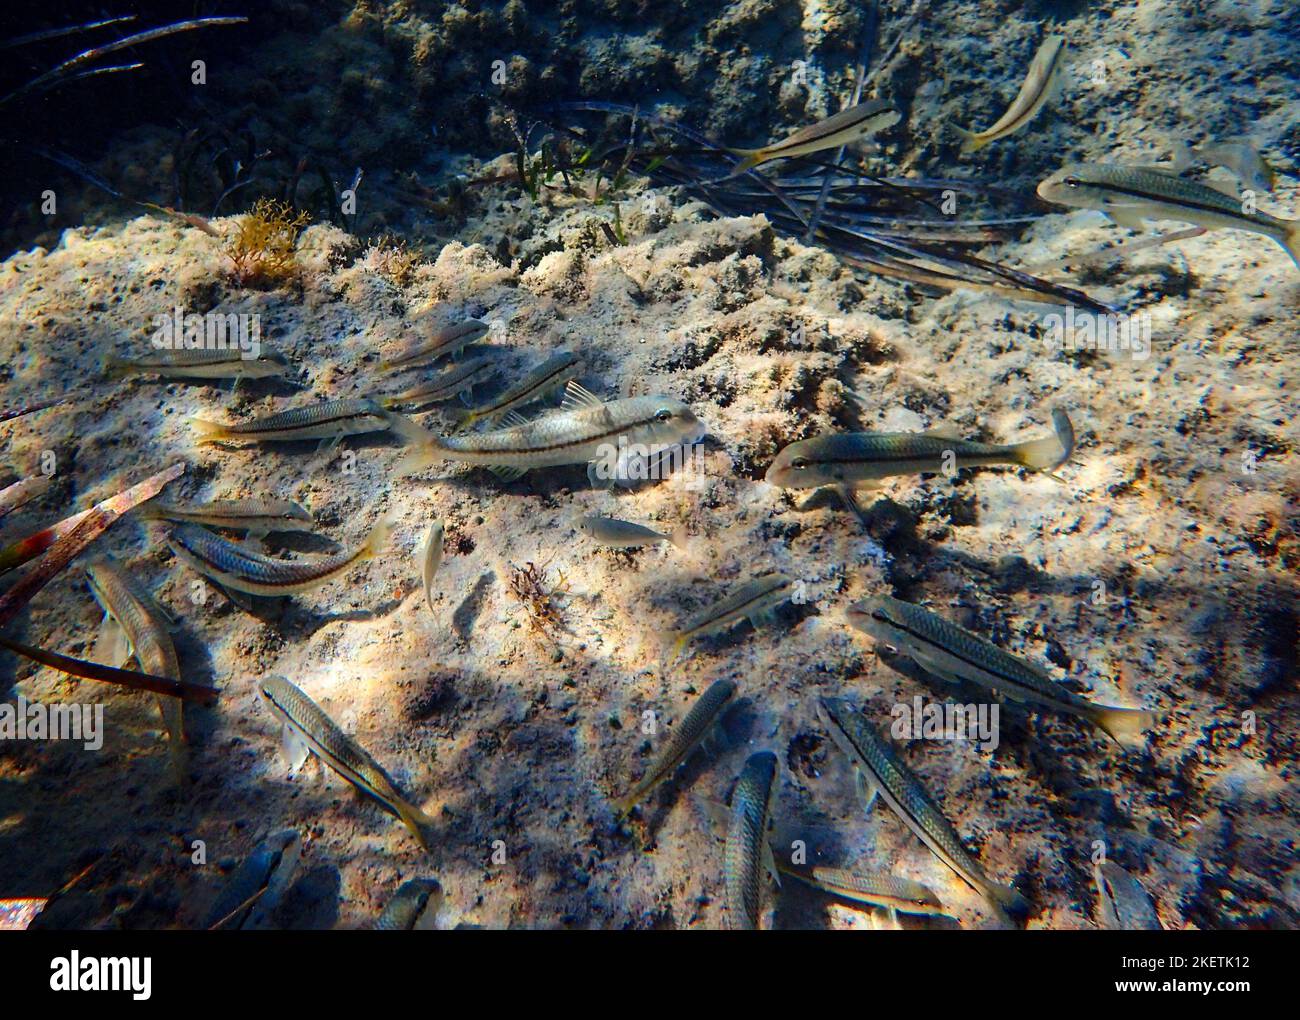 Poissons-silverside à tête dure (Atherinomorus lacunosus) se nourrissant sur le lit de mer de la Méditerranée orientale, Chypre. Banque D'Images